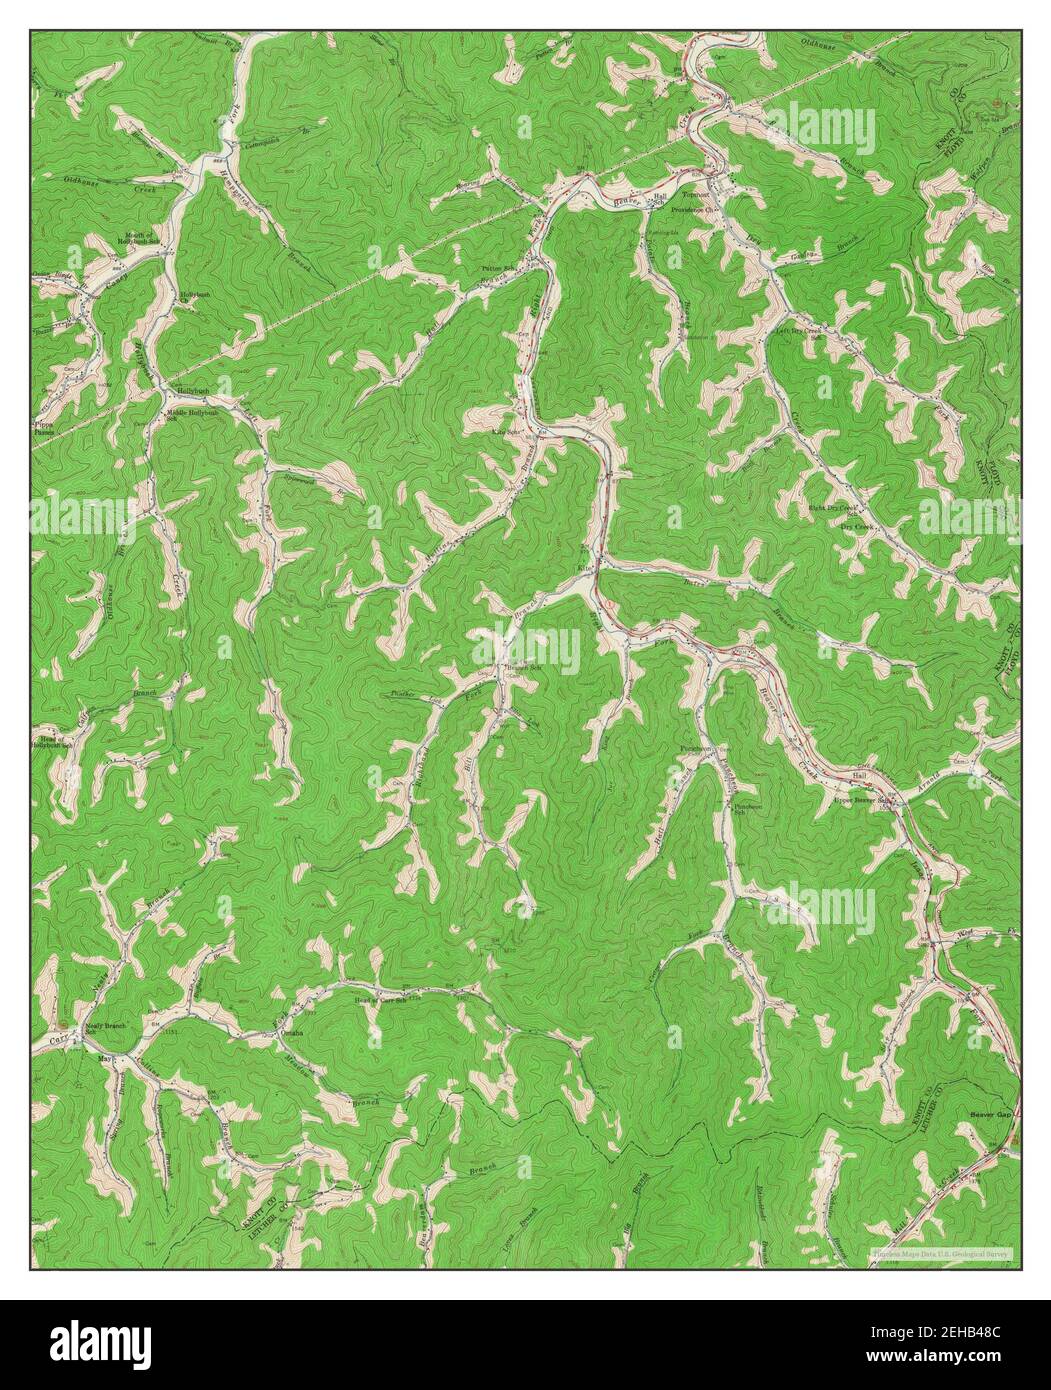 Kite, Kentucky, Karte 1954, 1:24000, Vereinigte Staaten von Amerika von Timeless Maps, Daten U.S. Geological Survey Stockfoto